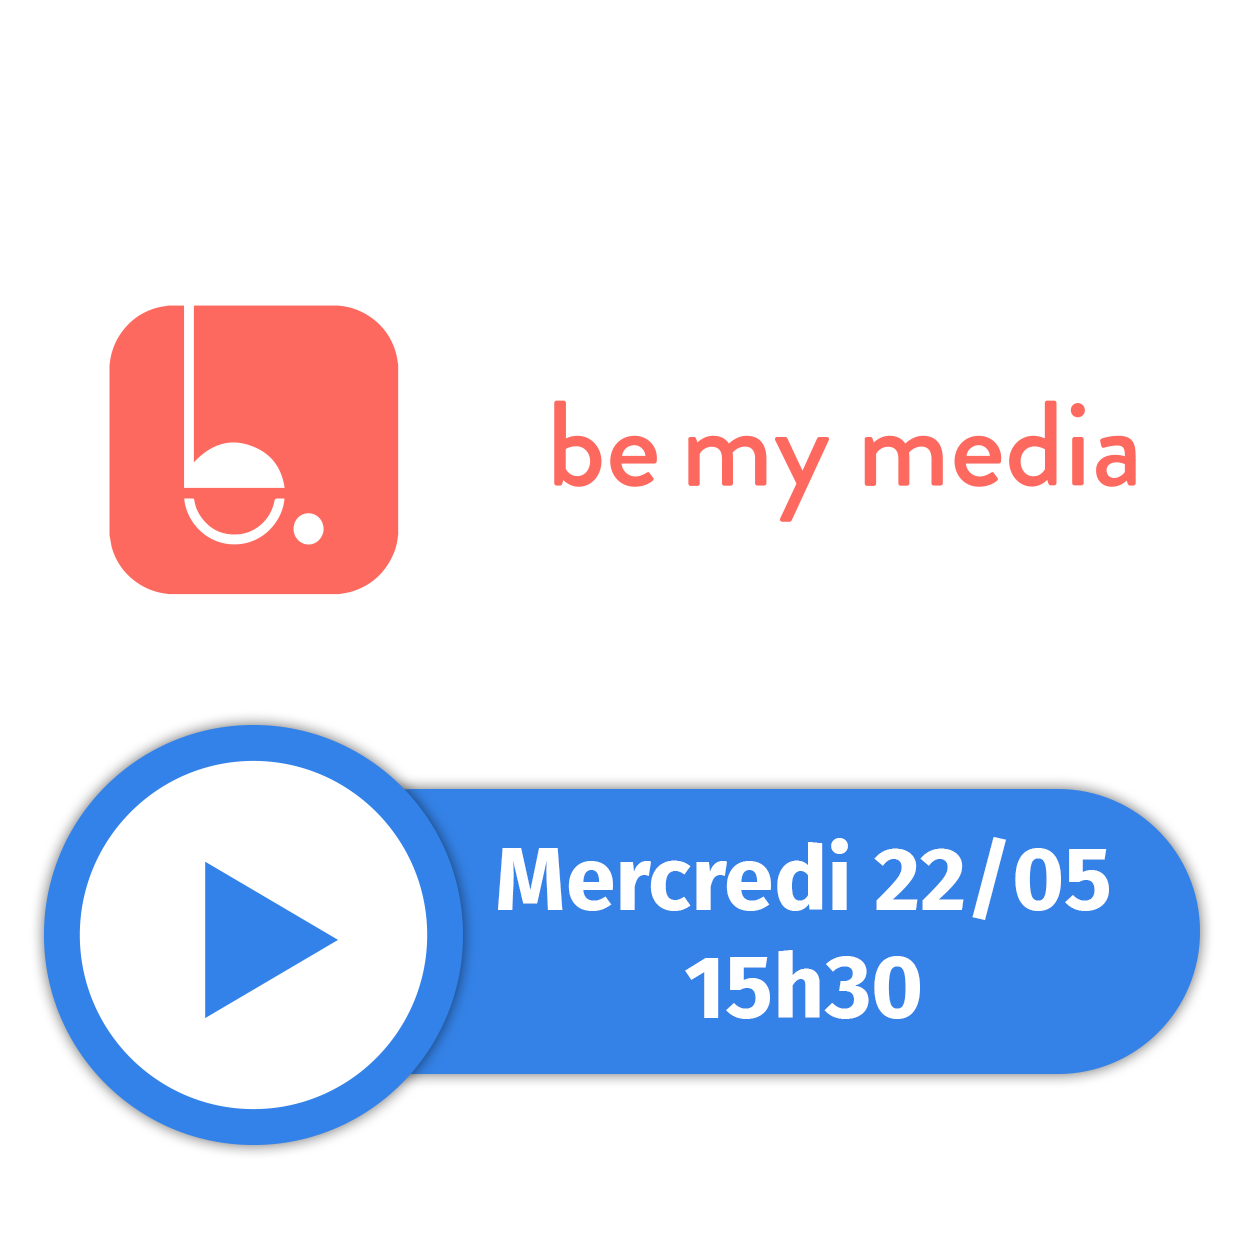 Be my media.